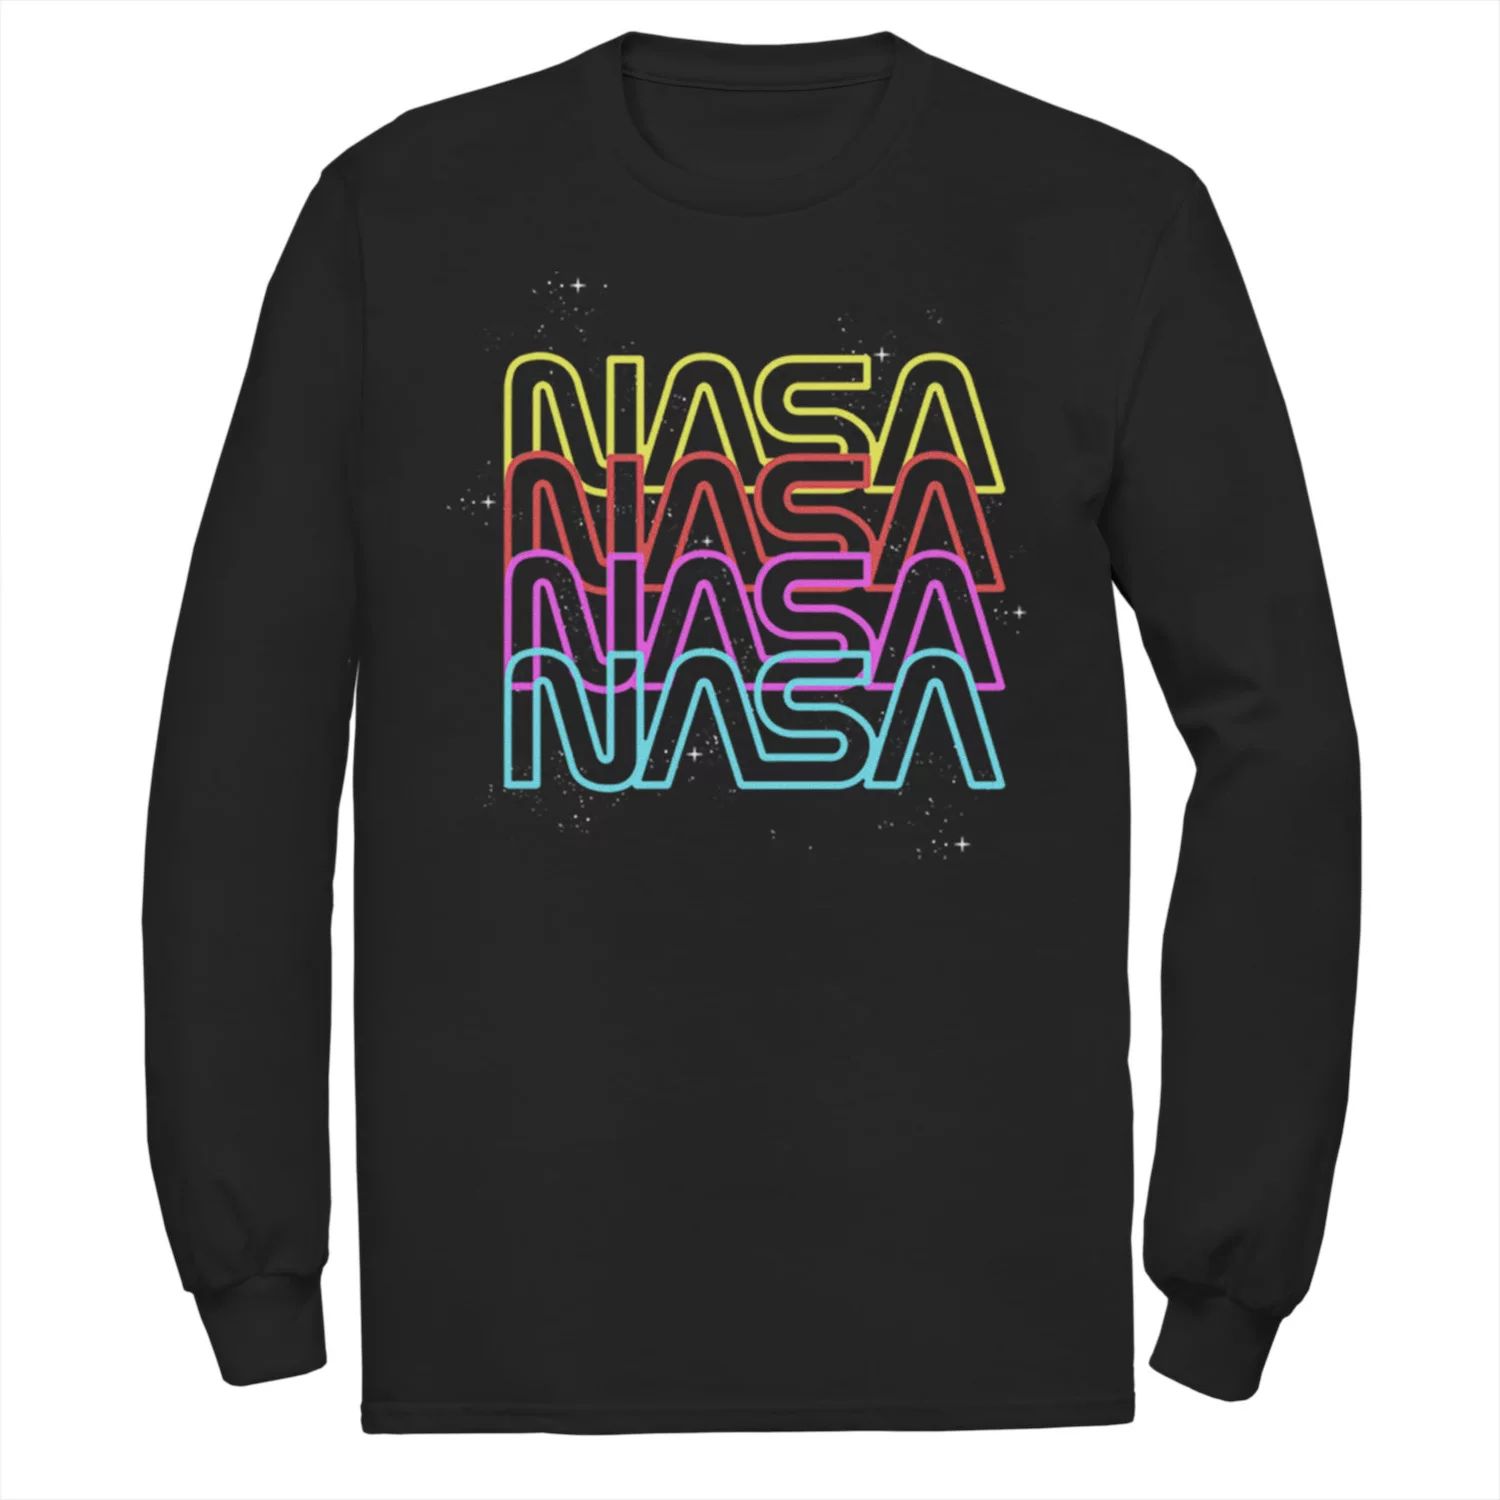 Мужская футболка NASA с неоновым радужным логотипом Licensed Character мужская футболка death before decaf с неоновым скелетом licensed character